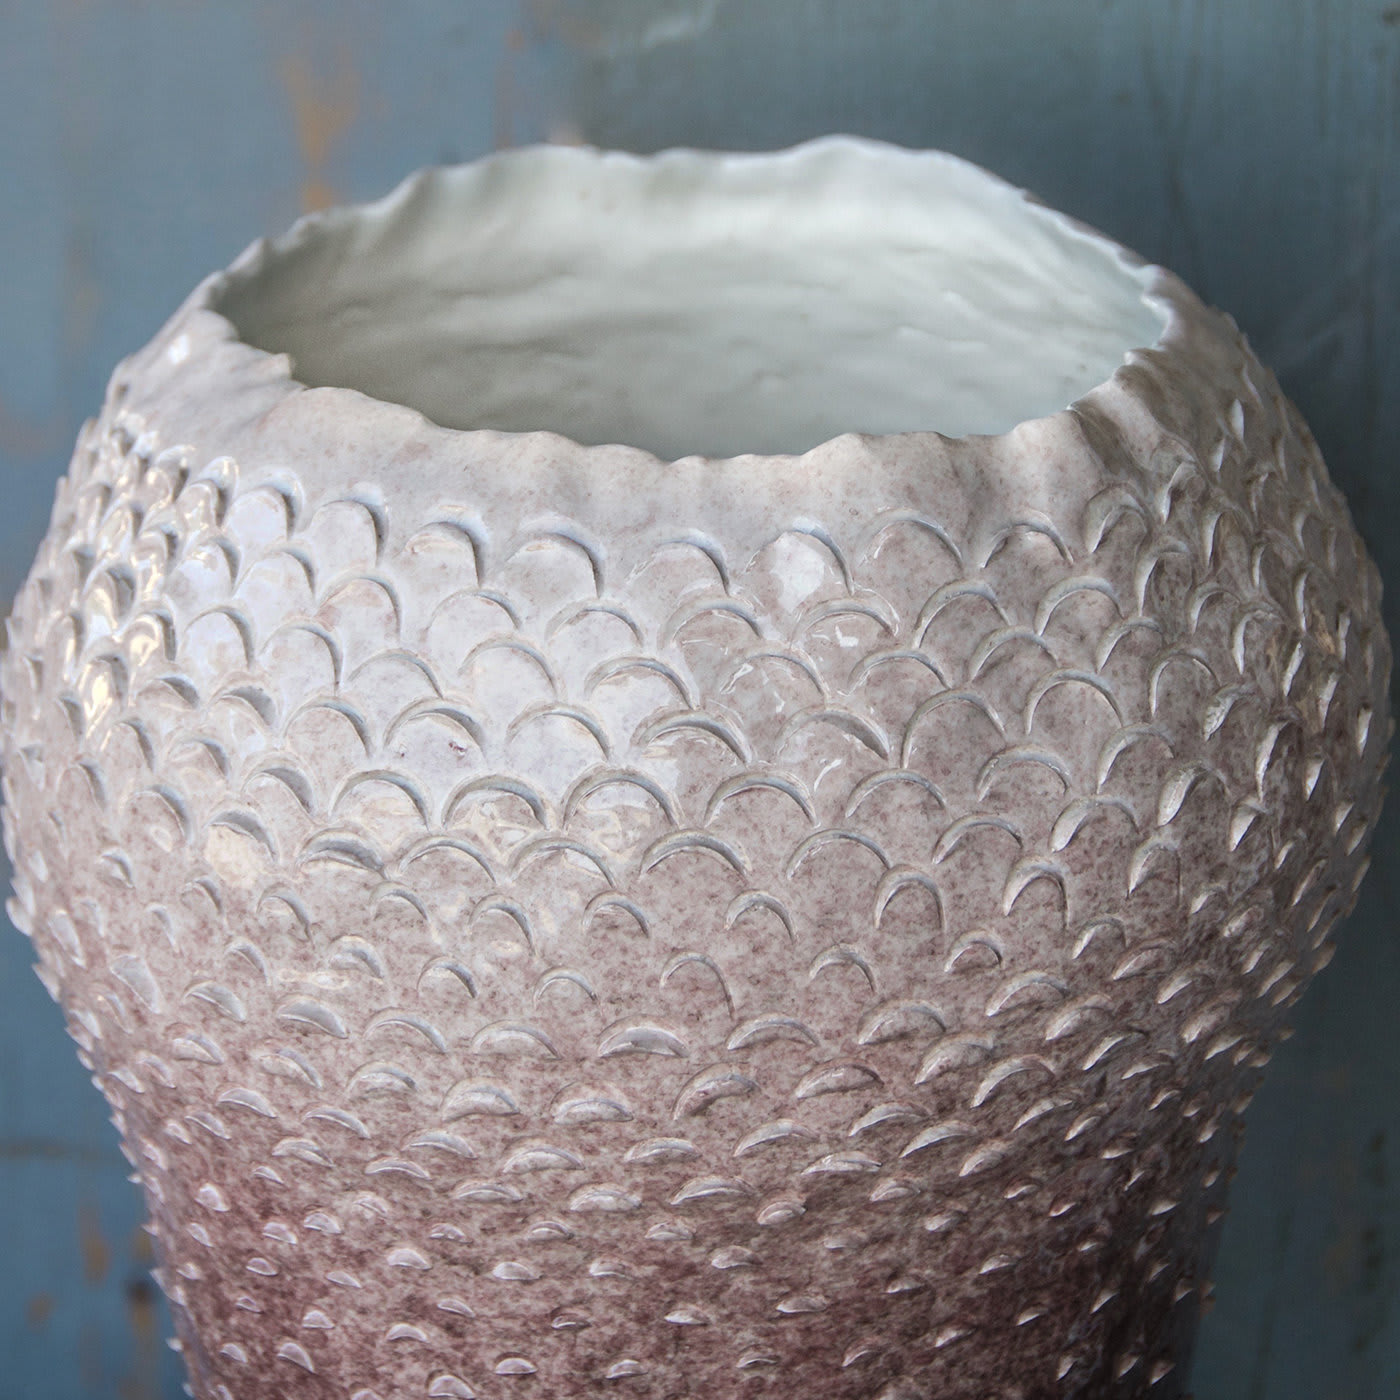 Petalo #2 Vase - AGGF Ceramics